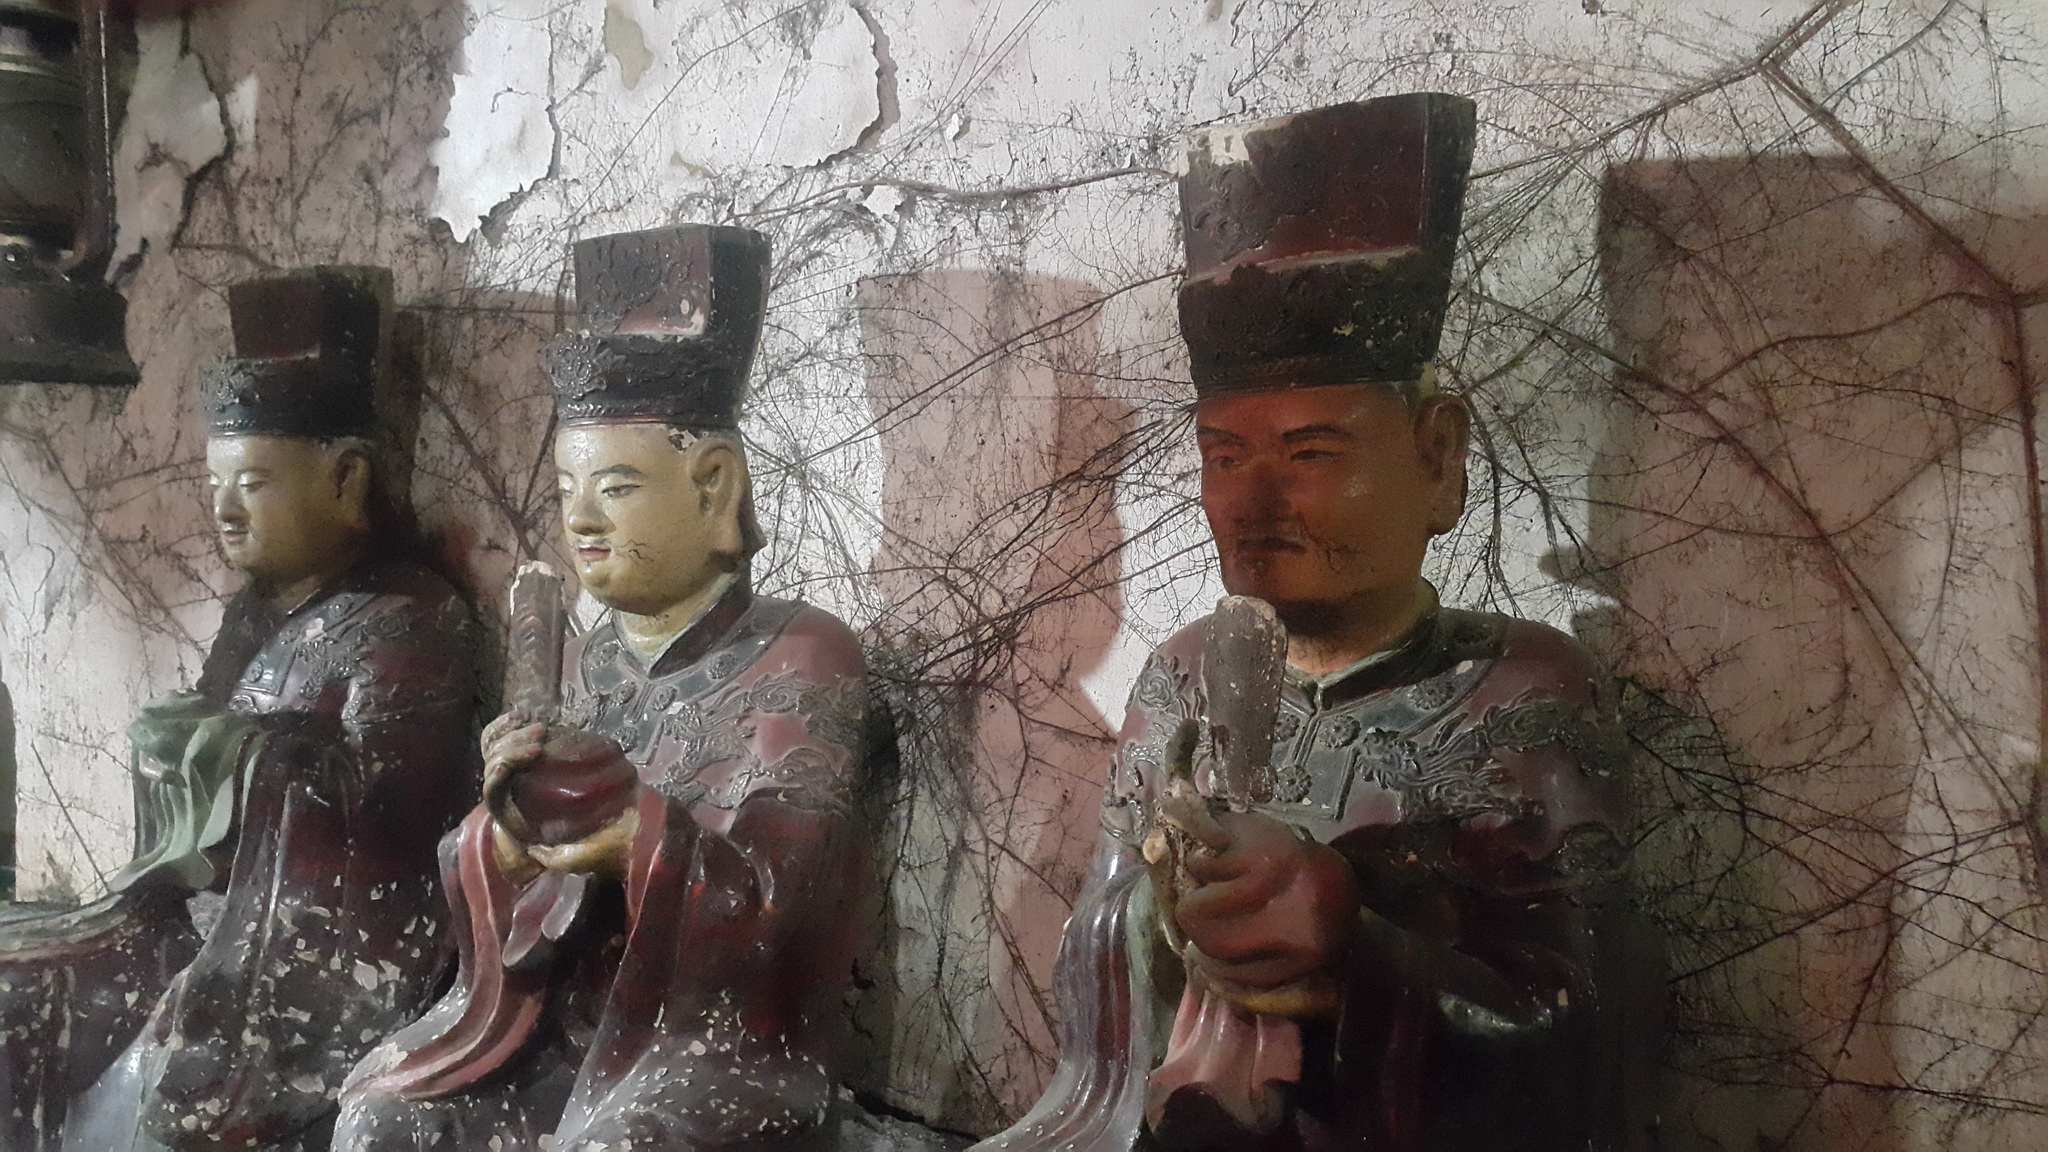 Tường và hệ thống tượng tại chùa Báo Ân, xã Đồng Quang, huyện Quốc Oai xuống cấp nghiêm trọng. (Ảnh: Đinh Thuận/Vietnam+)